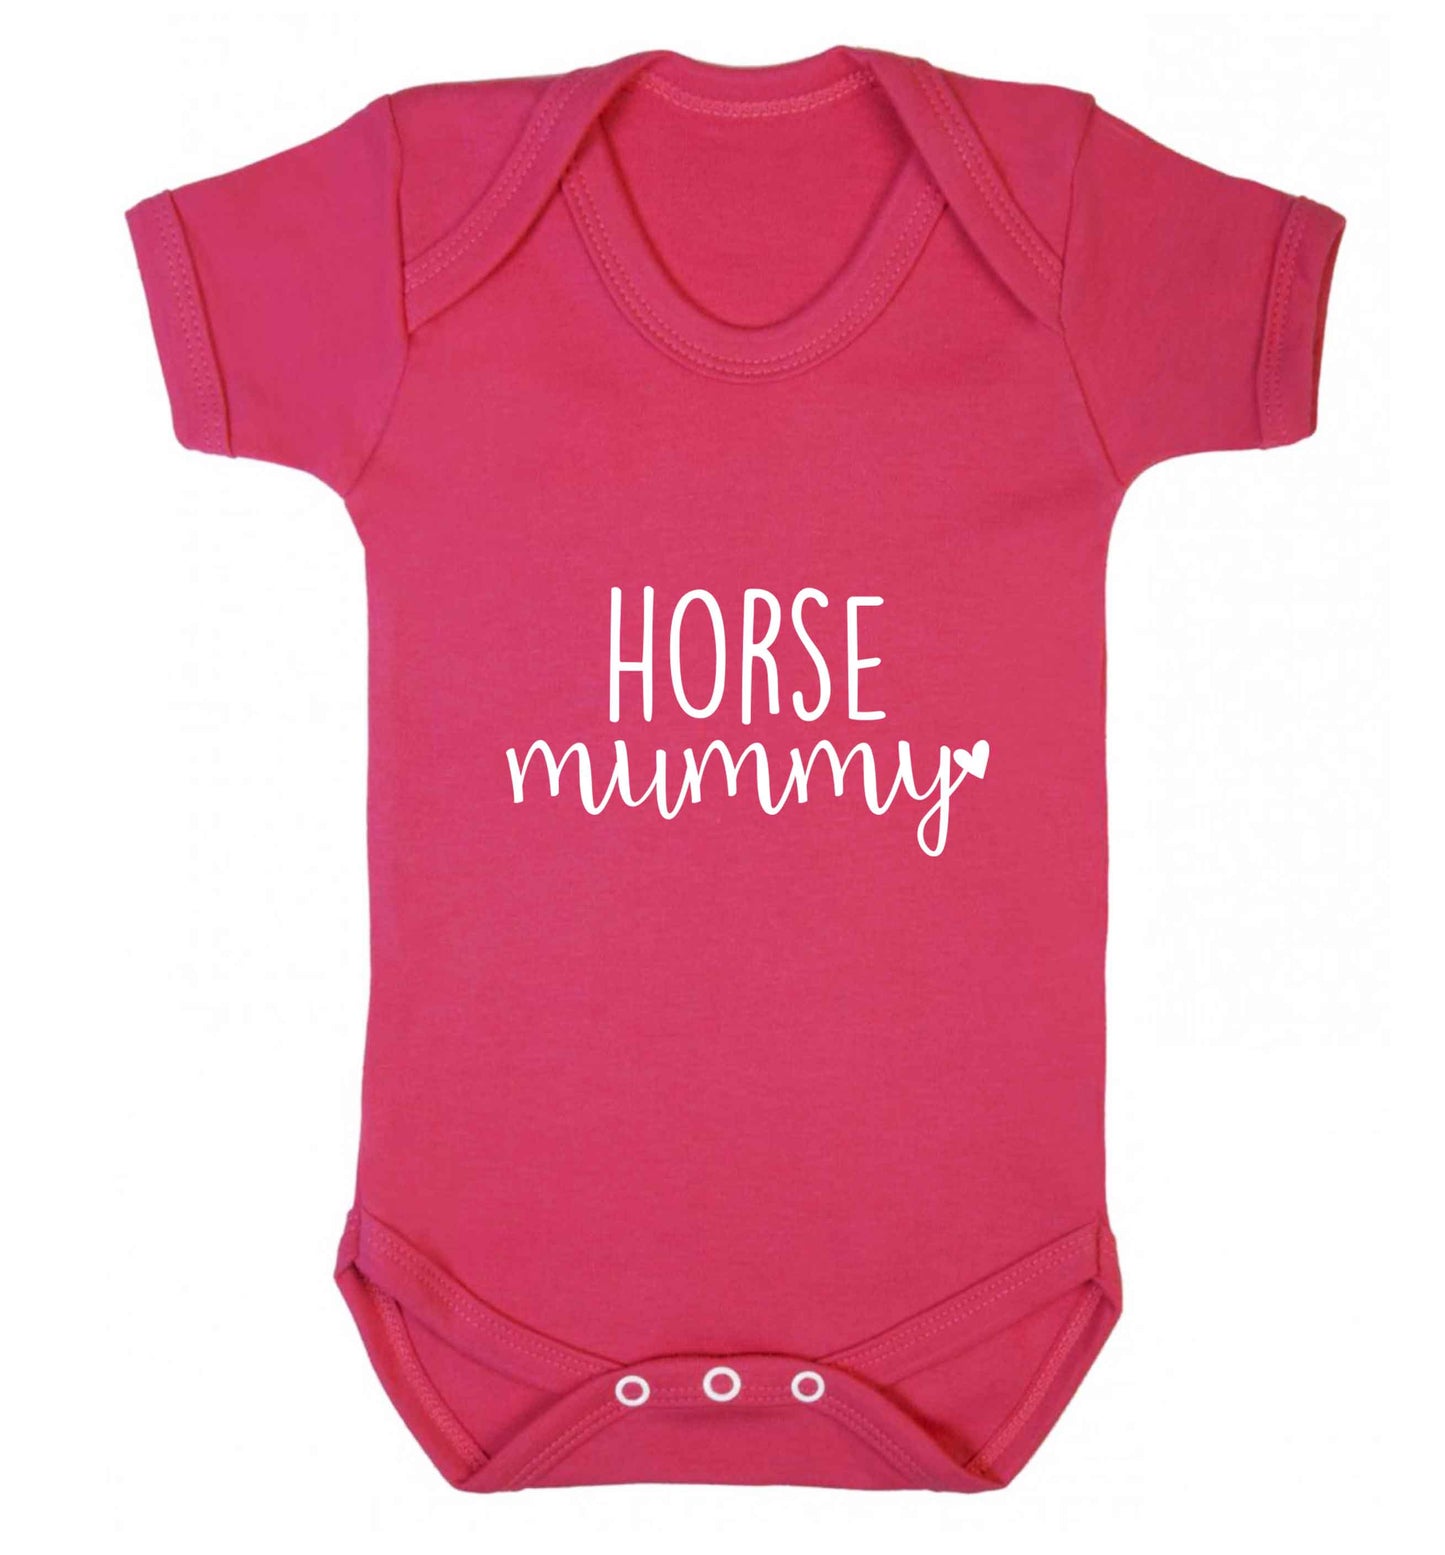 Horse mummy baby vest dark pink 18-24 months